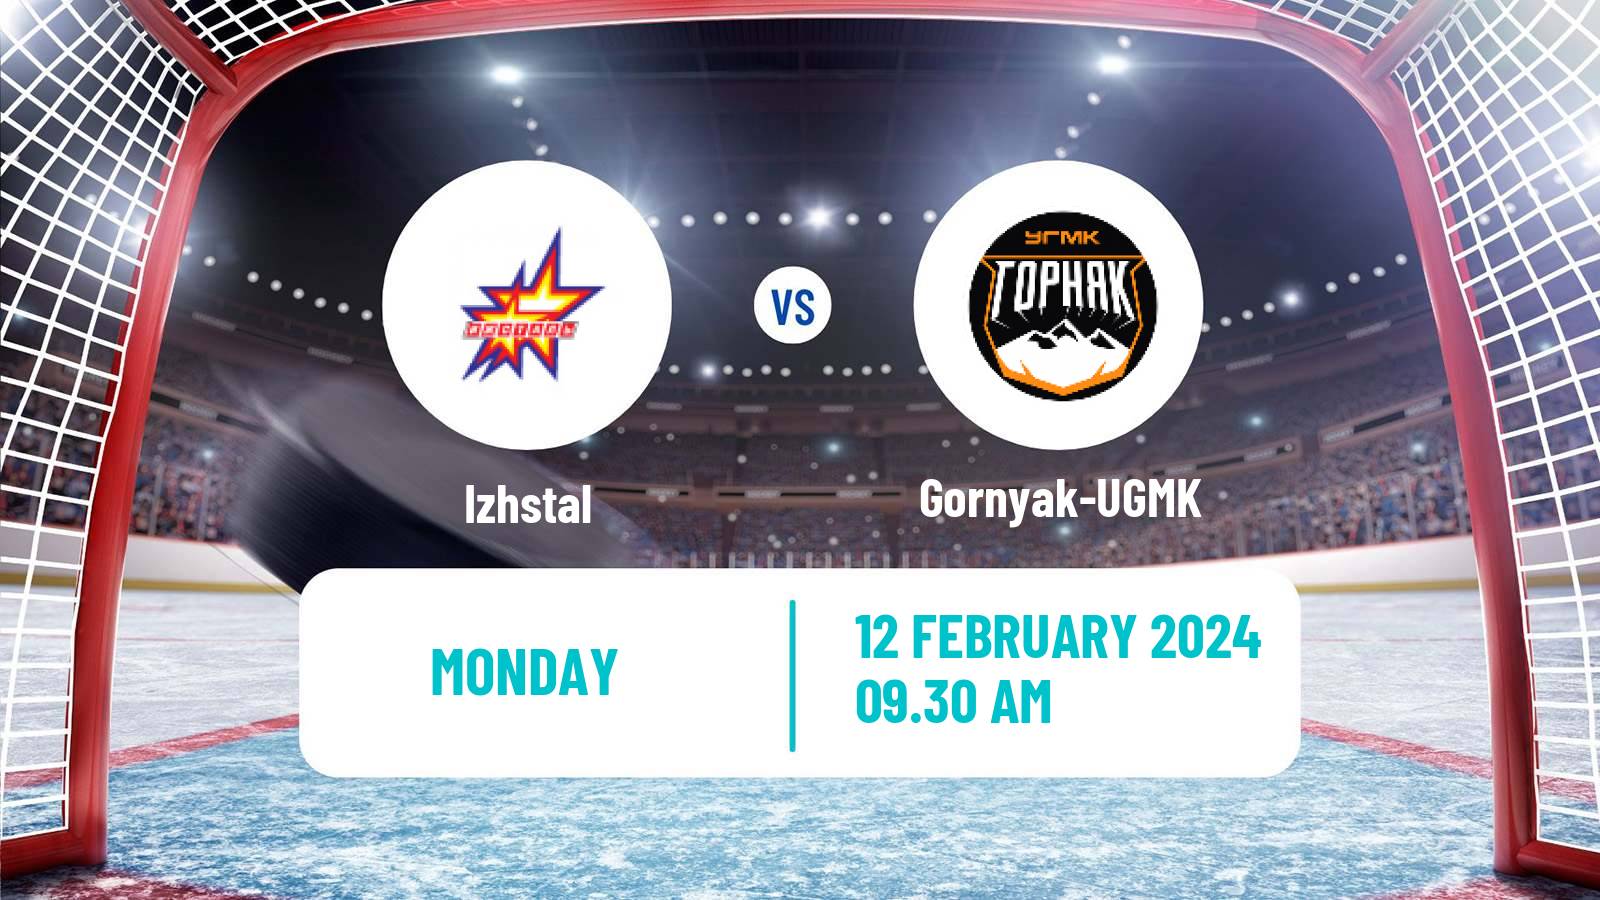 Hockey VHL Izhstal - Gornyak-UGMK